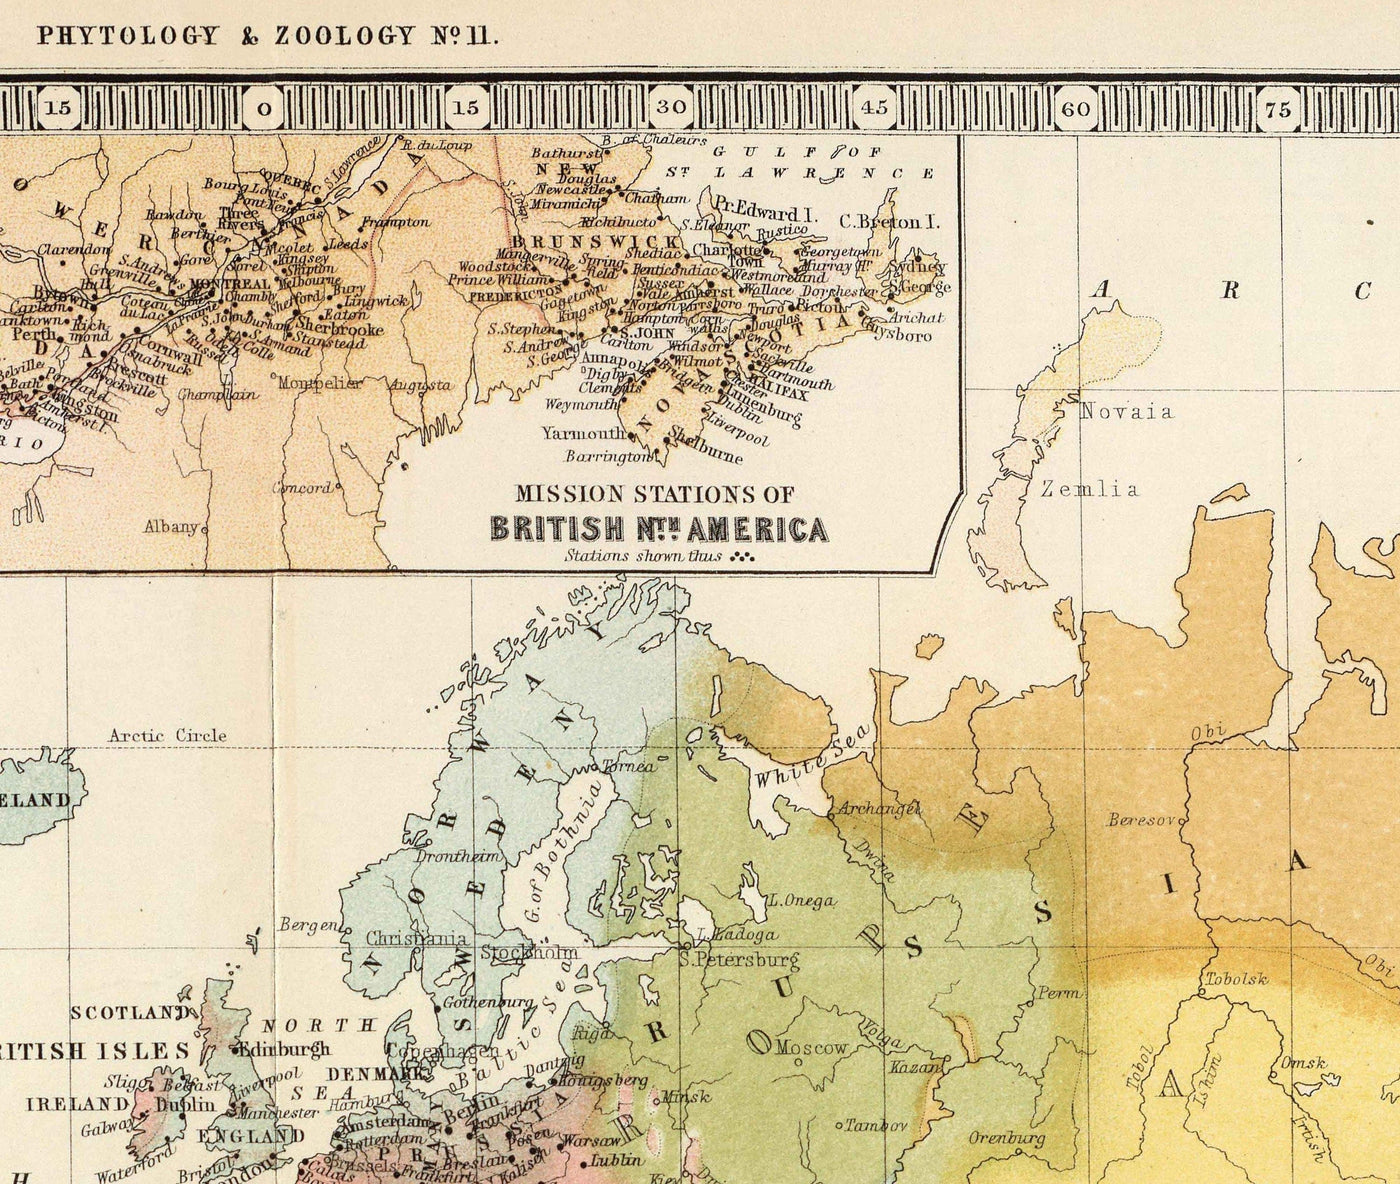 Old Religion World Map, 1854 - Religiöse Überzeugungen im 19. Jahrhundert - Buddhisten, Protestanten, Katholiken, Muslime, Juden, Heiden